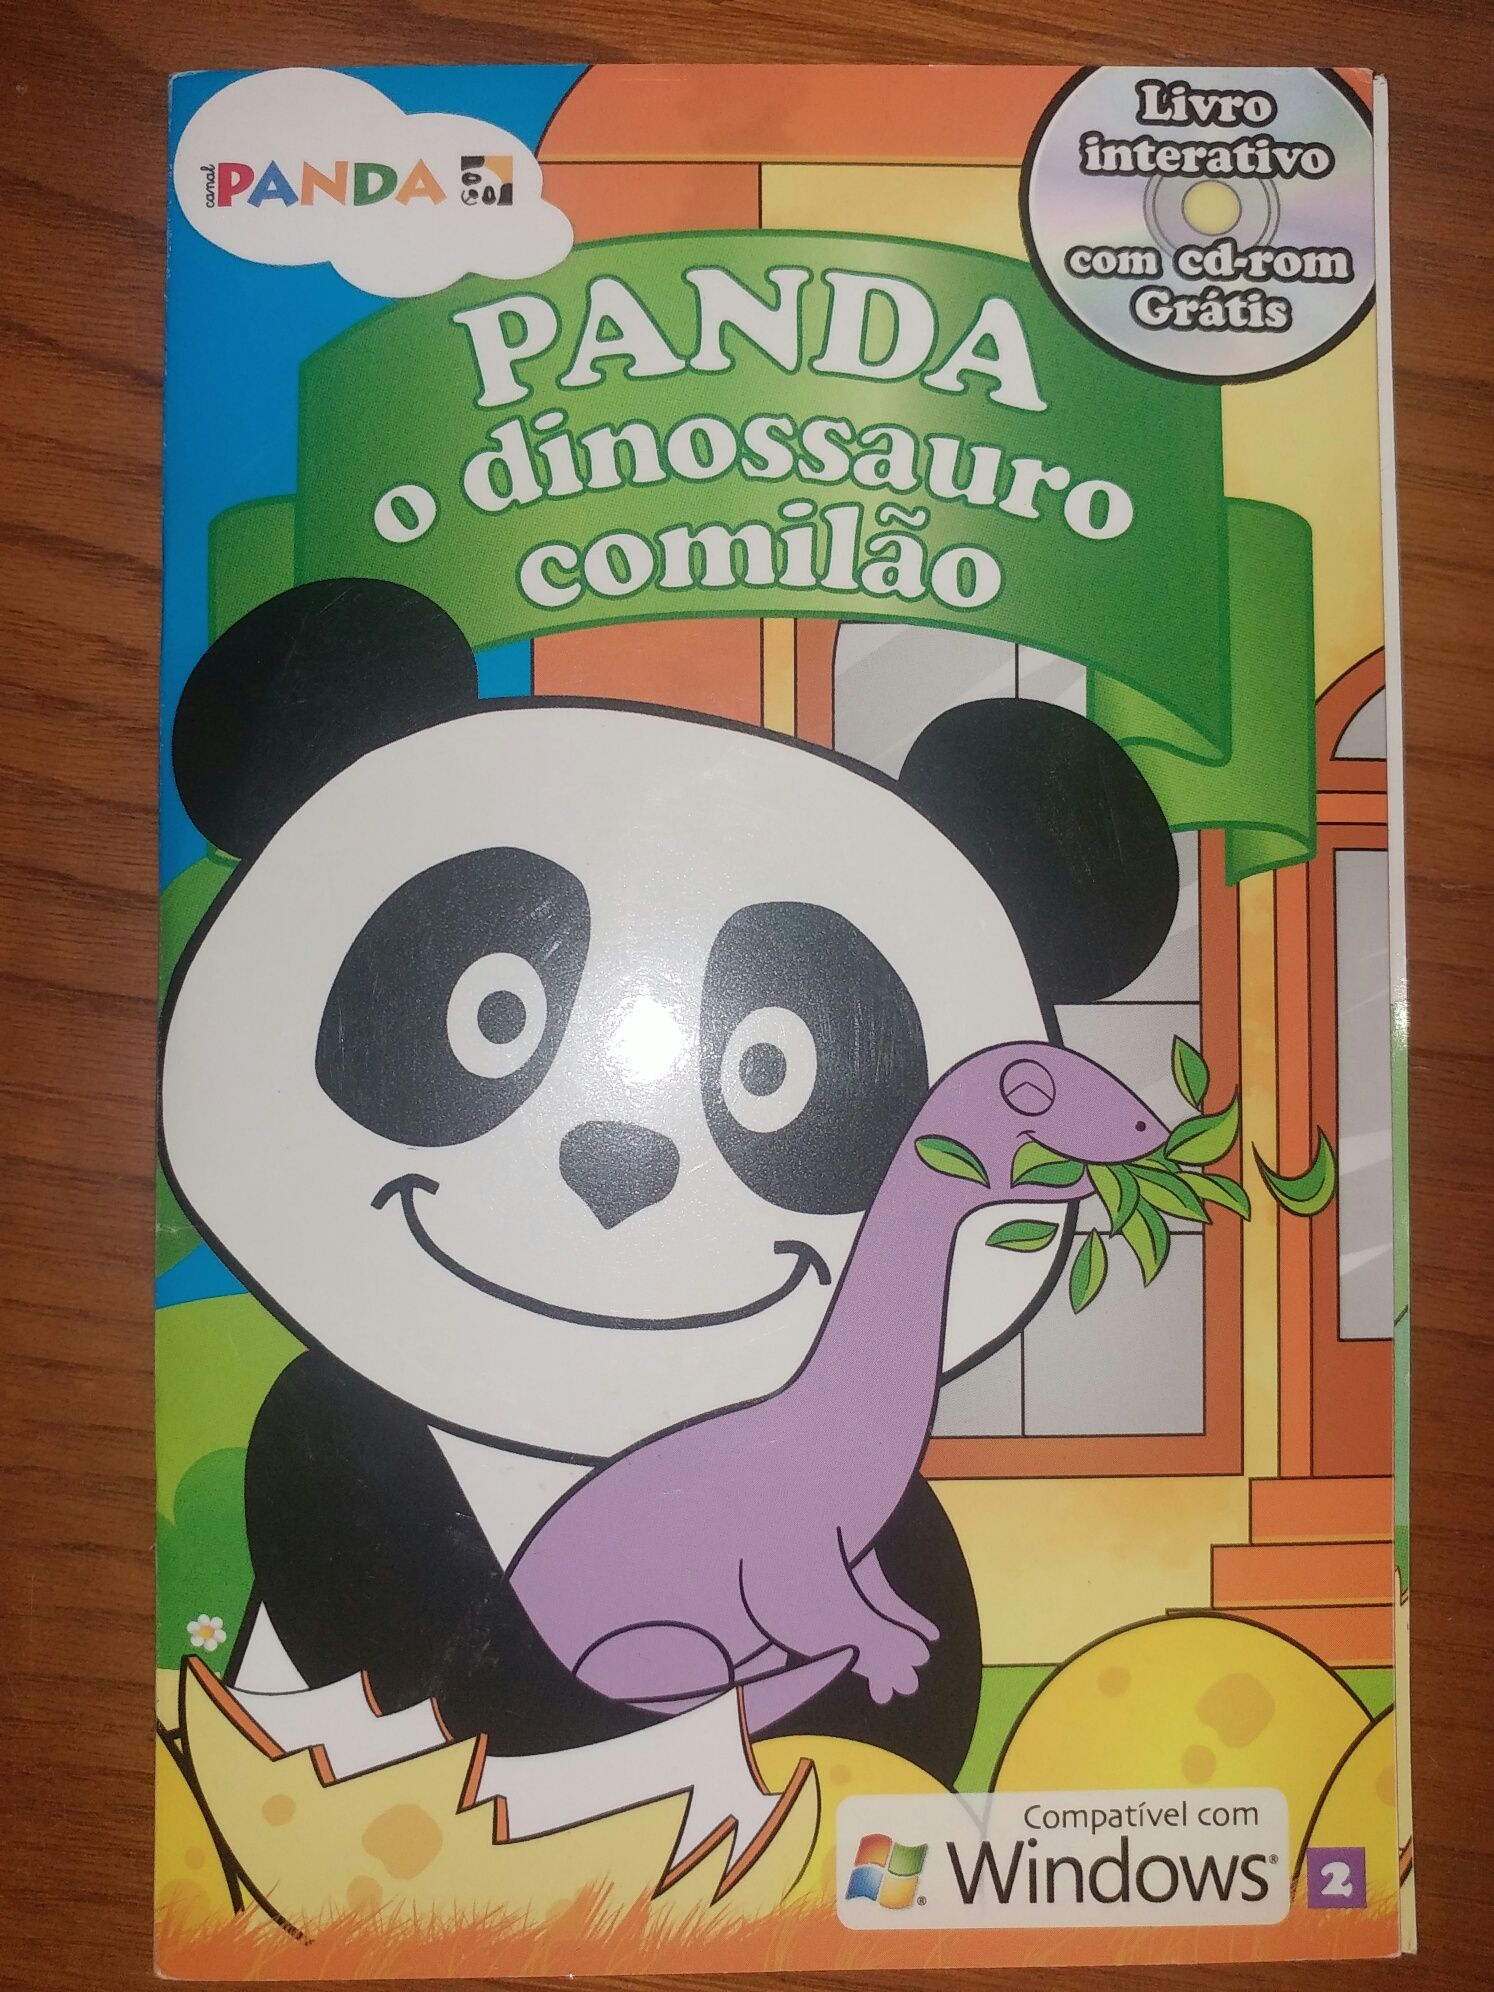 Panda: o dinossauro comilão